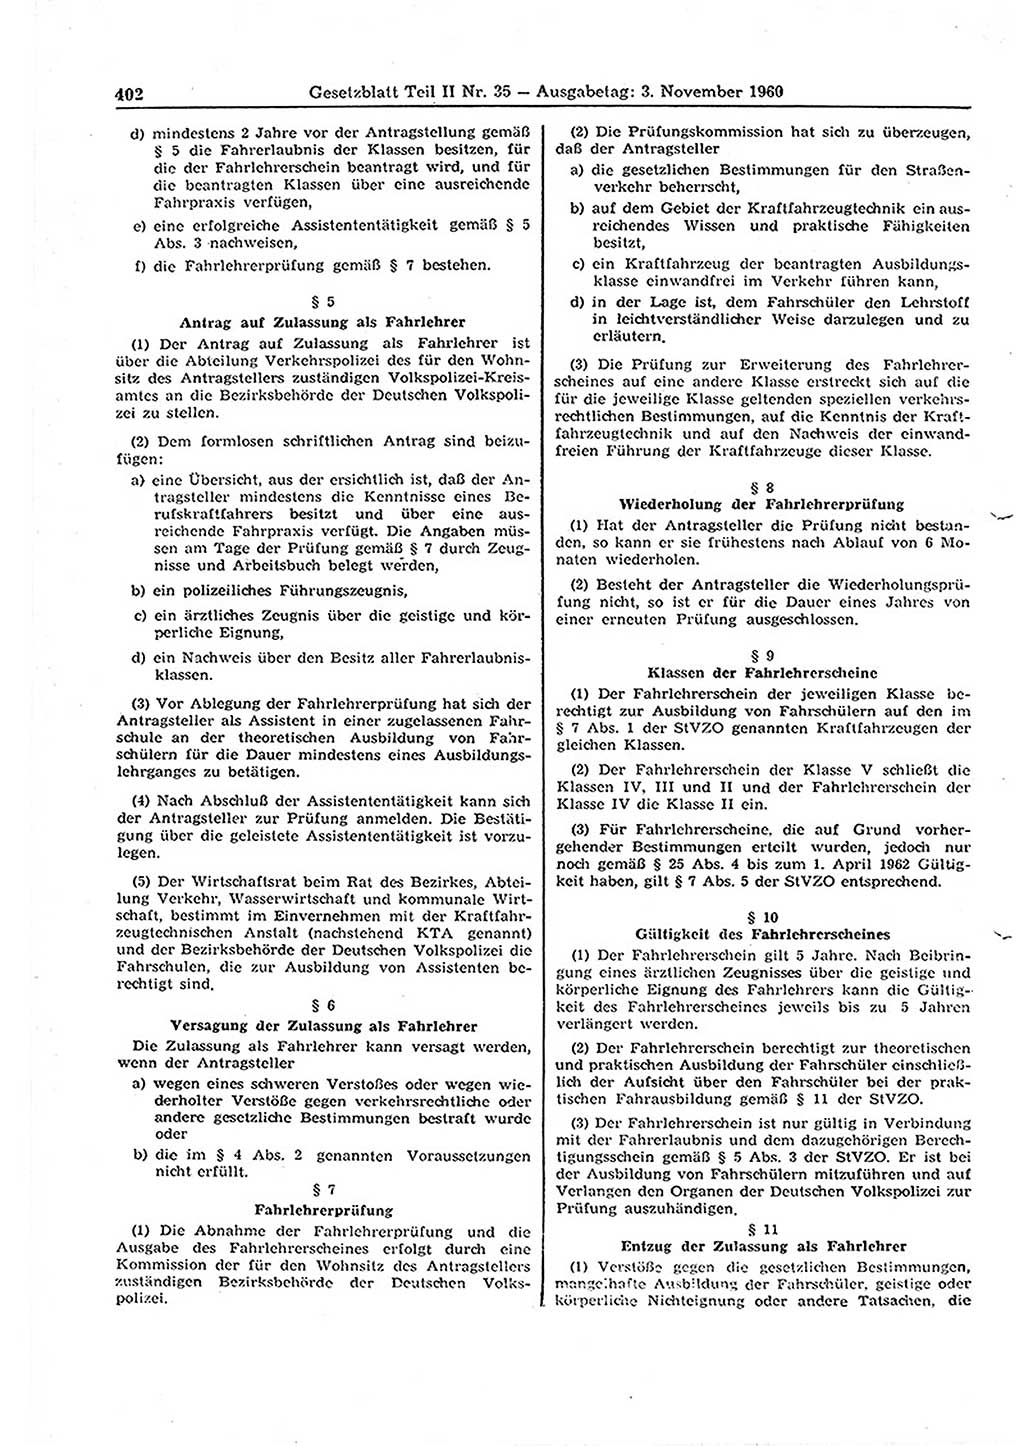 Gesetzblatt (GBl.) der Deutschen Demokratischen Republik (DDR) Teil ⅠⅠ 1960, Seite 402 (GBl. DDR ⅠⅠ 1960, S. 402)